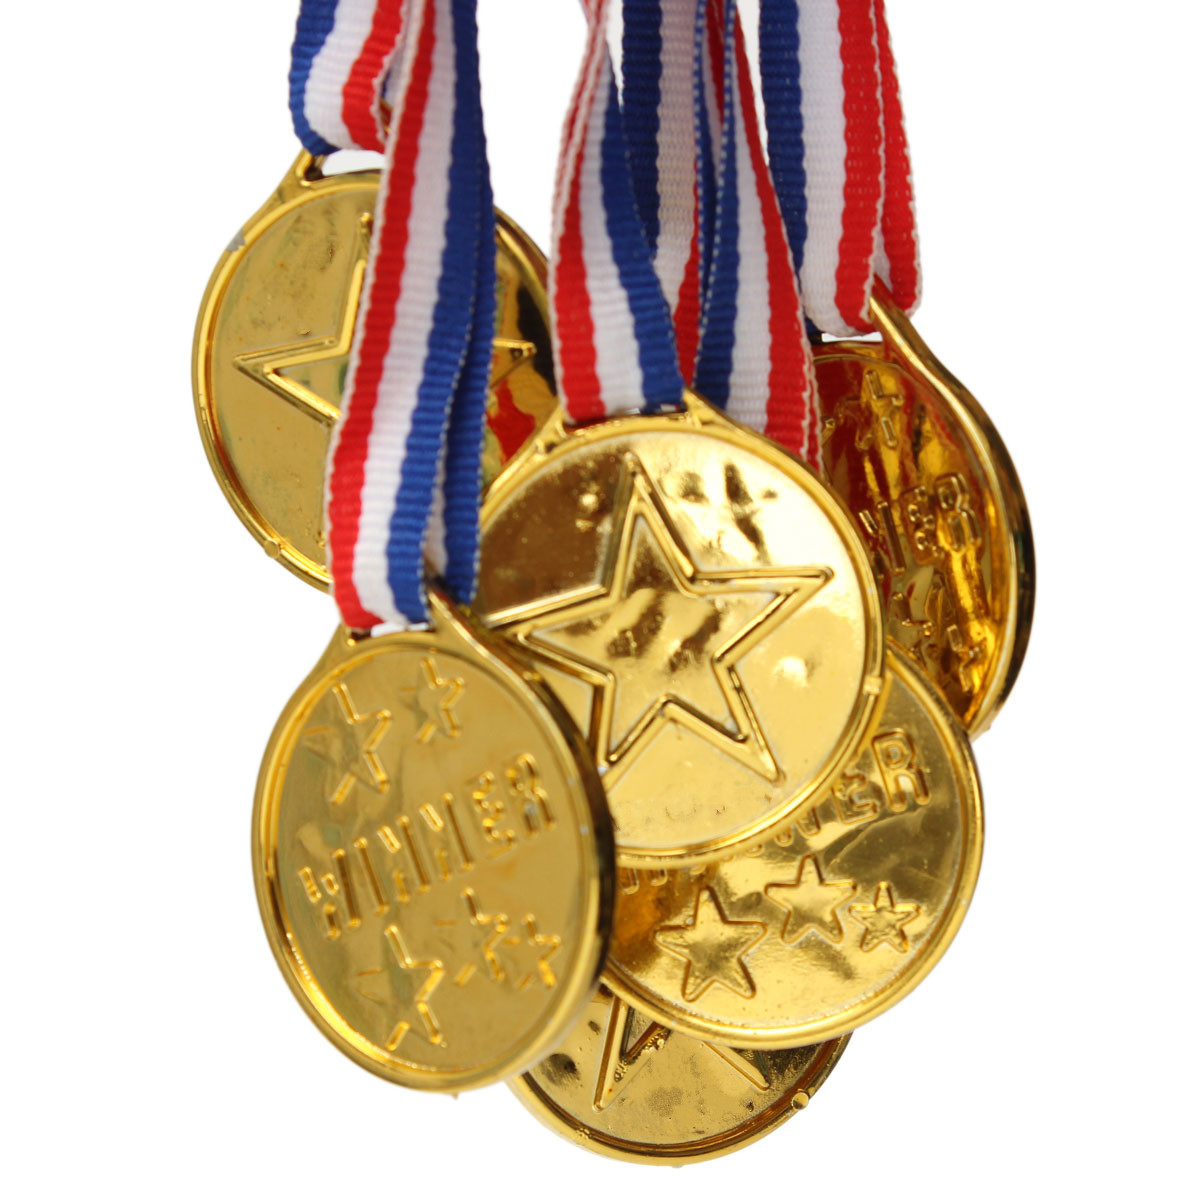 Sporting medals. Медали спортивные. Яркие спортивные медали. Игрушечные медали. Медаль с первым местом.